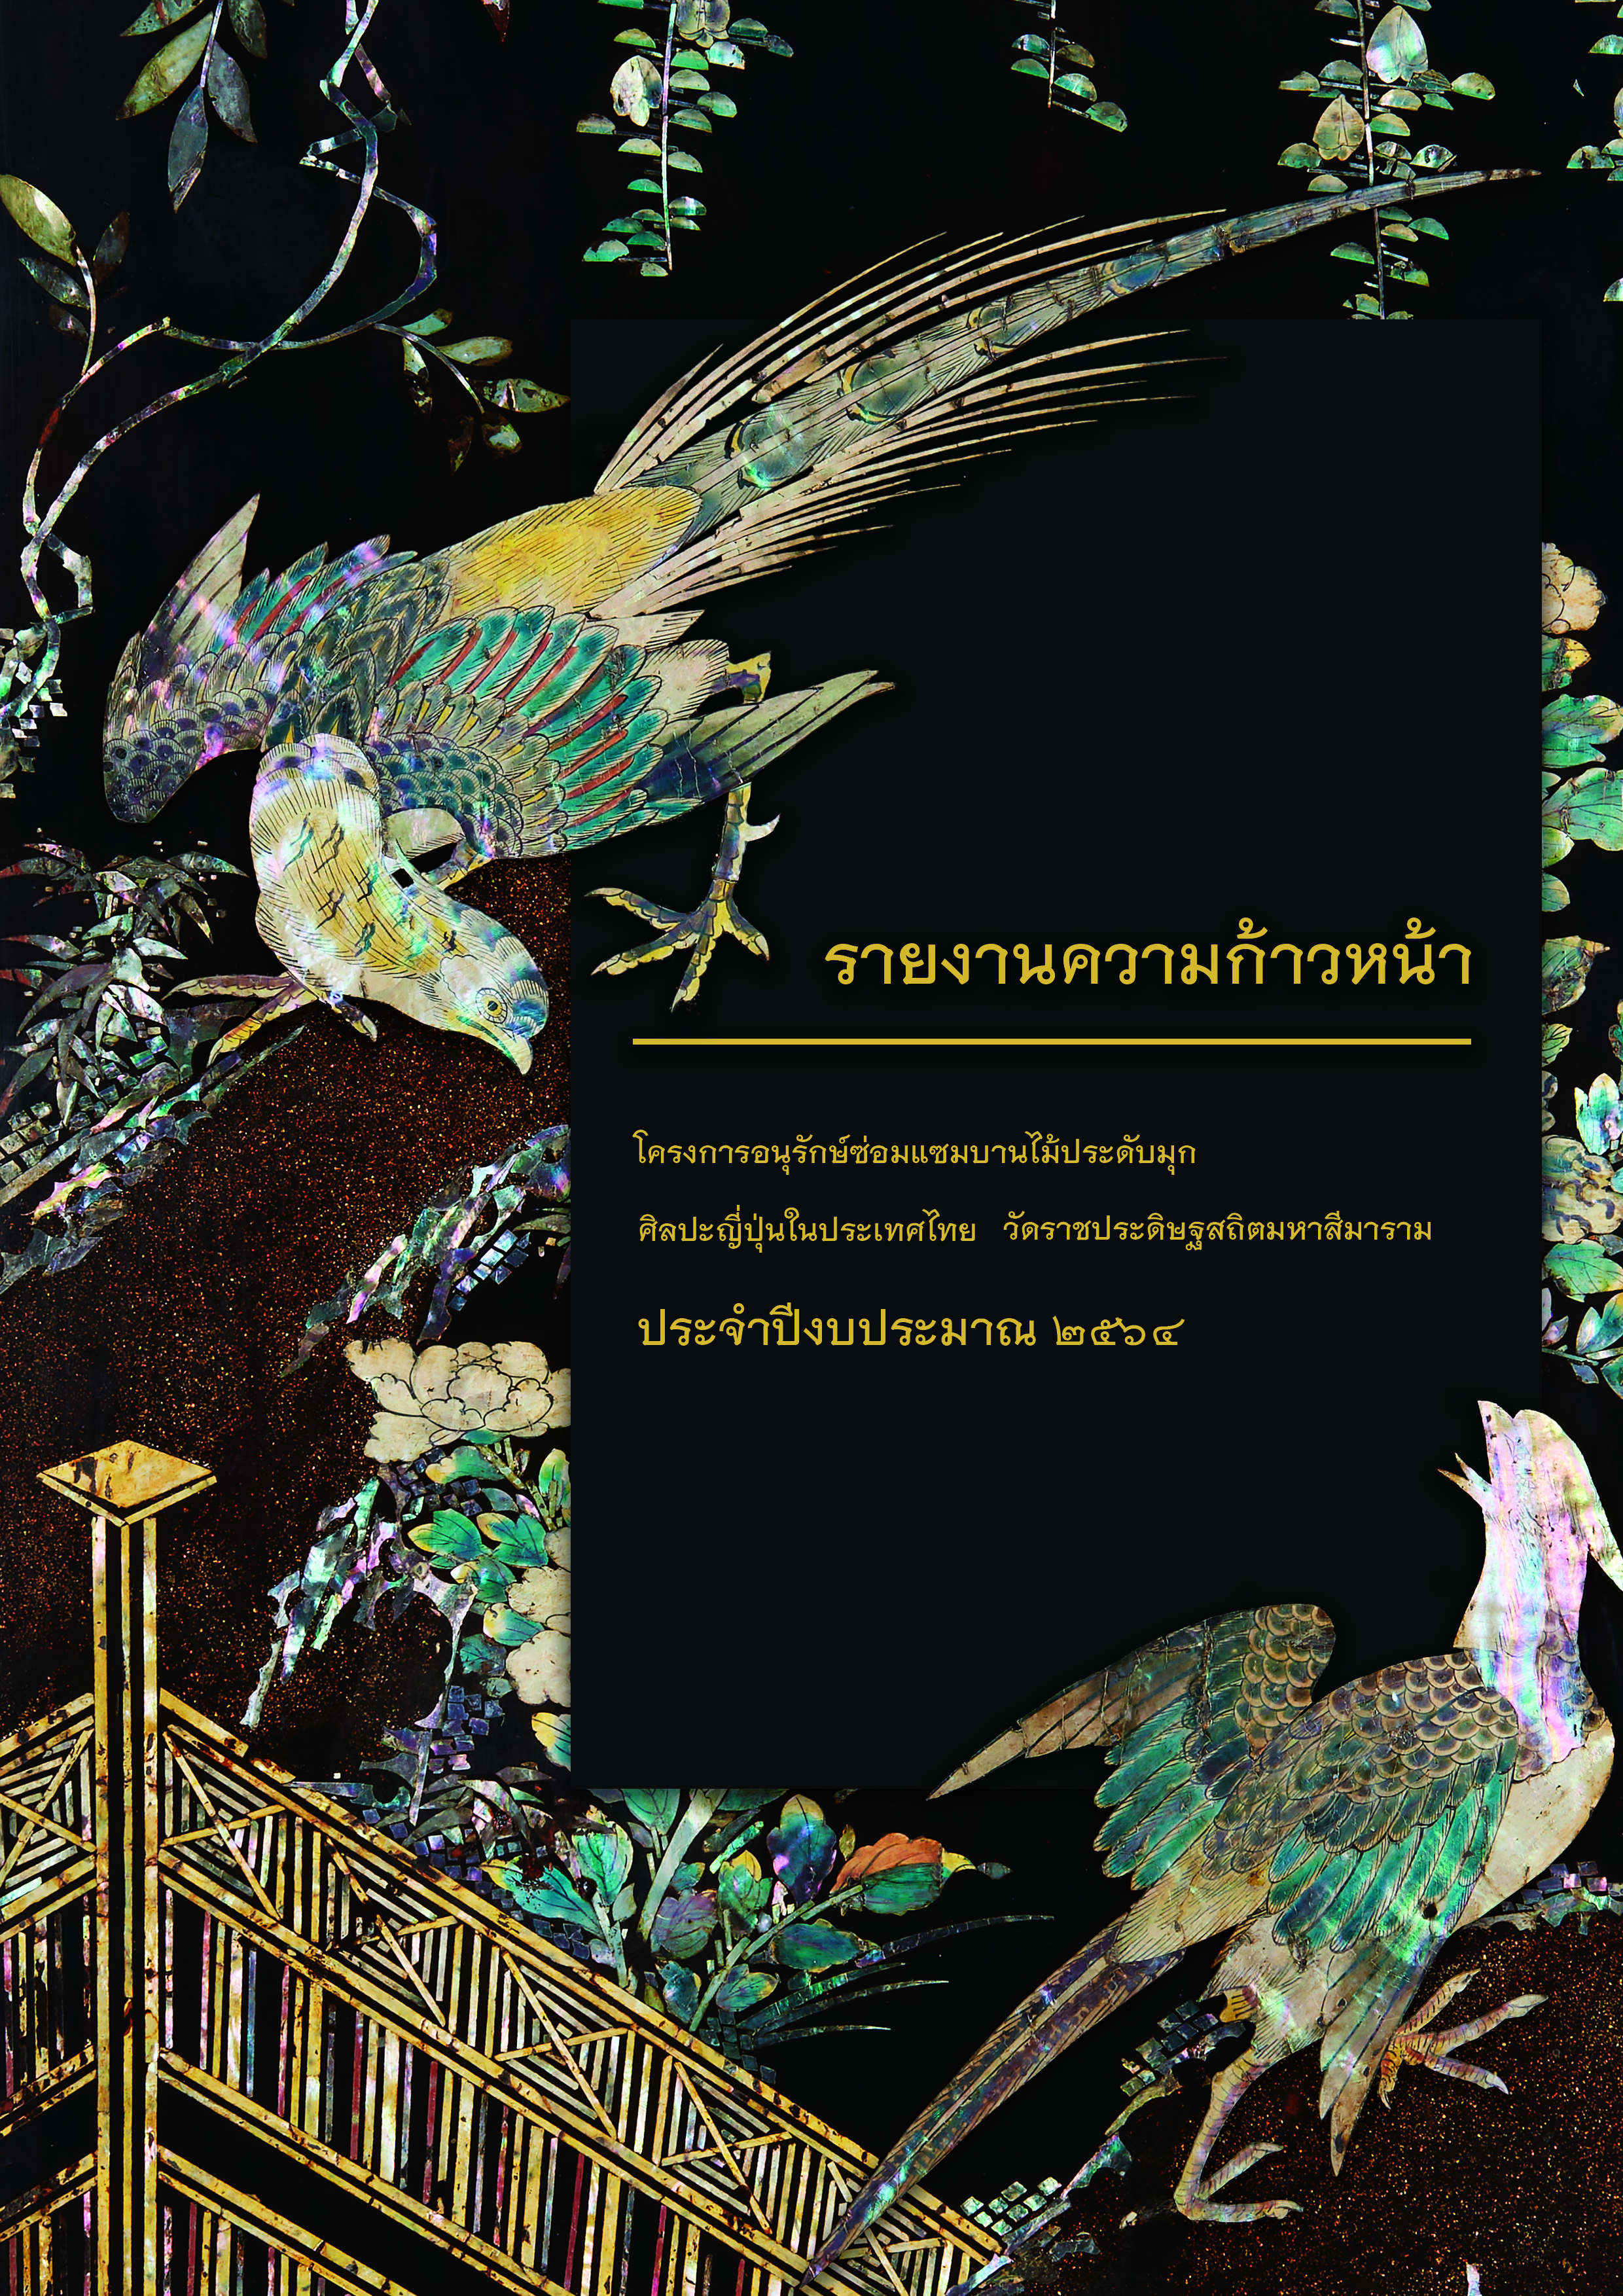 ภาพองค์ความรู้: รายงานความก้าวหน้า  โครงการอนุรักษ์ซ่อมแซมบานไม้ประดับมุกศิลปะญี่ปุ่นในประเทศไทย พระวิหารหลวง วัดราชประดิษฐสถิตมหาสีมาราม  ประจำปีงบประมาณ ๒๕๖๔